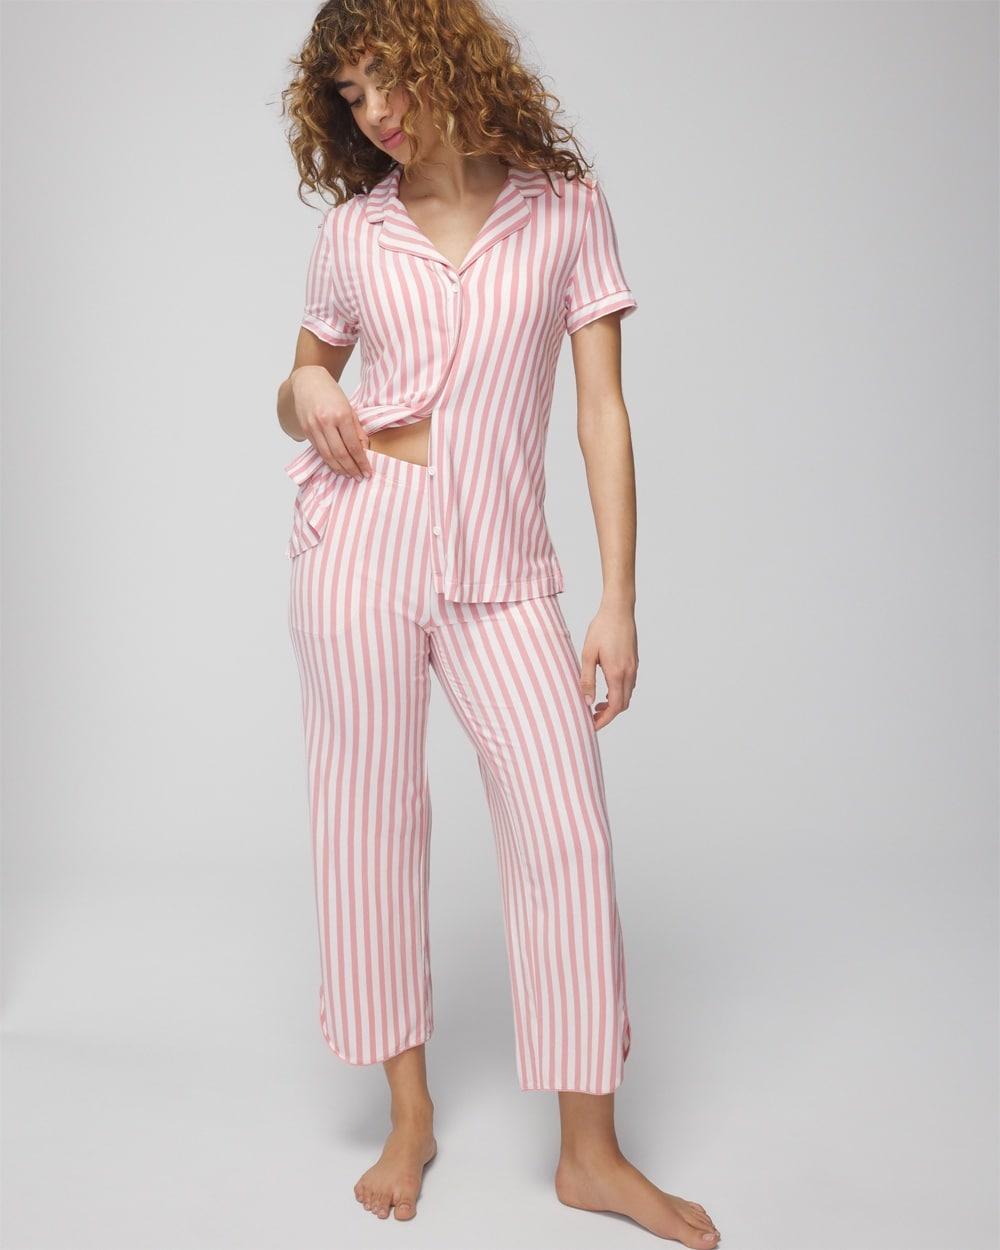 Soma Women's Cool Nights Cropped Pajama Pants In Capri Stripe Blush Pink Size Xs |